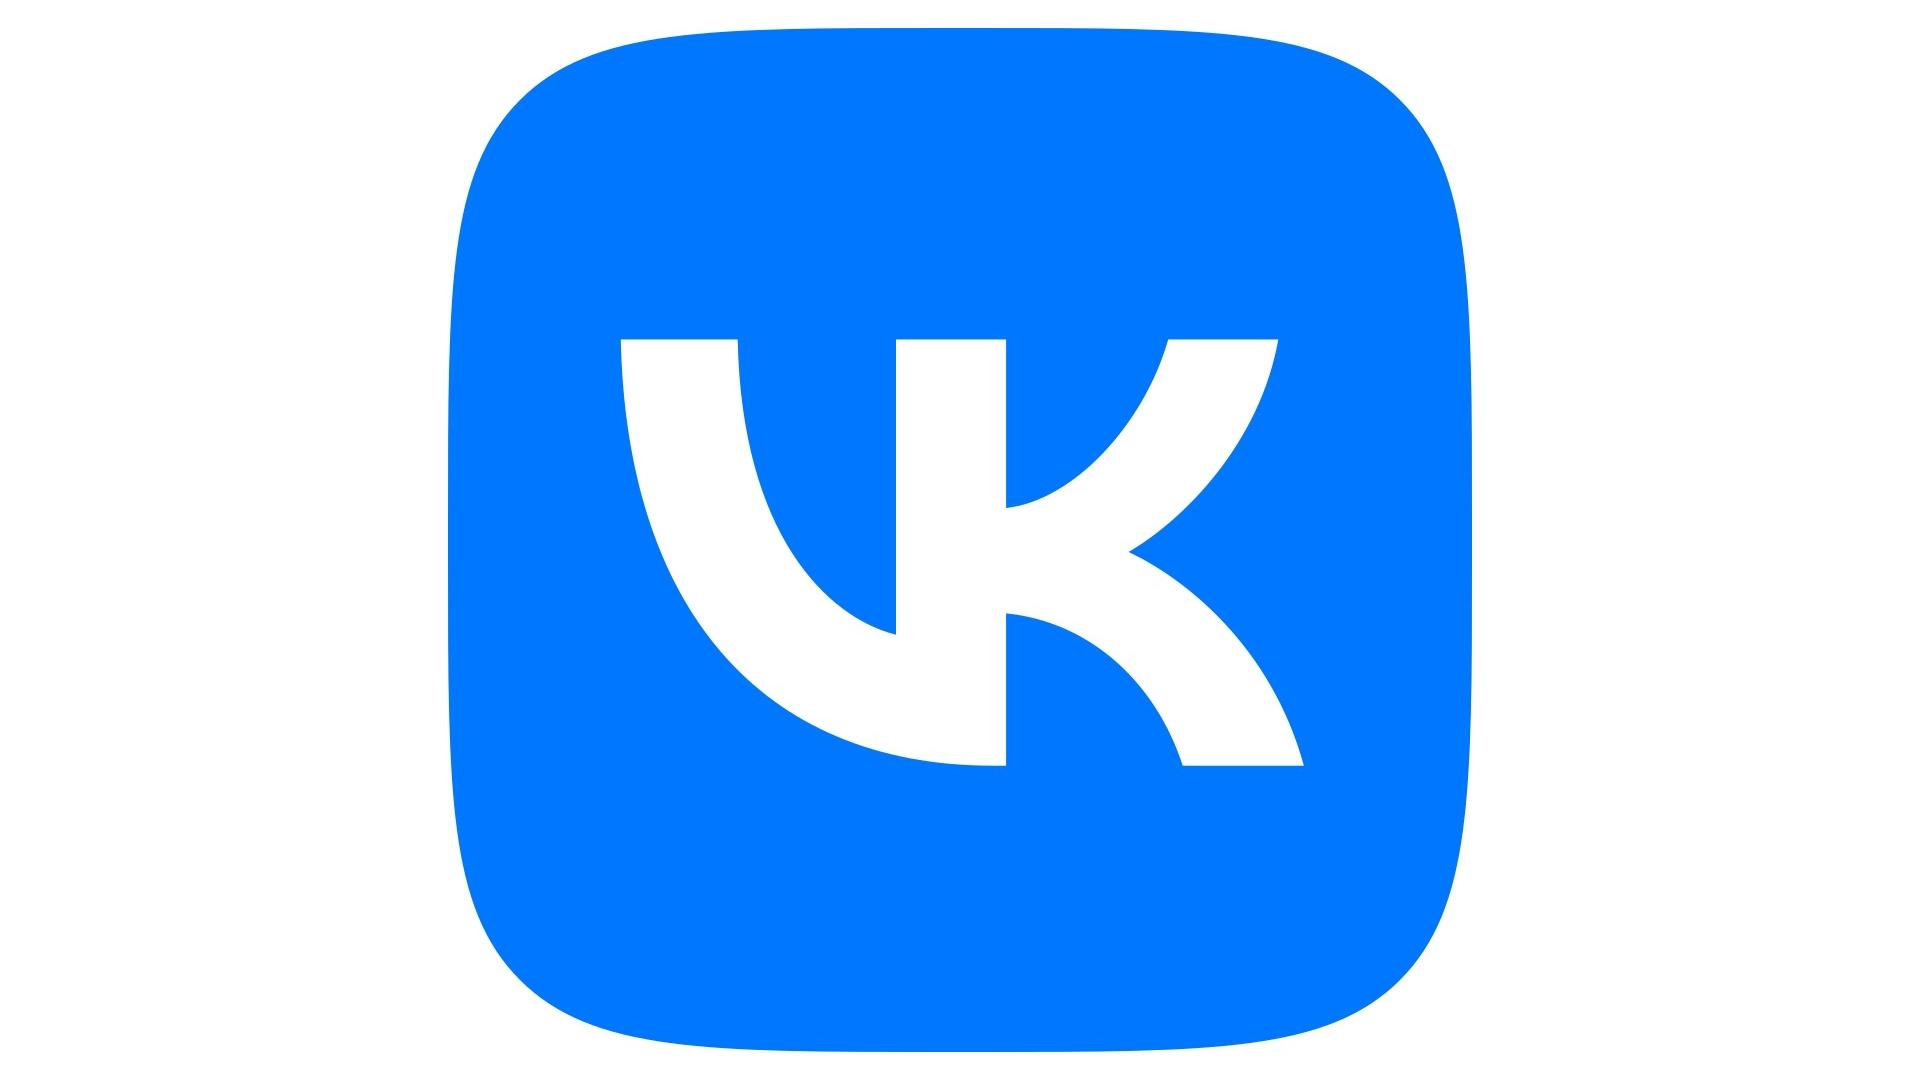 Почему не загружается ВК и браузер не заходит во Вконтакте